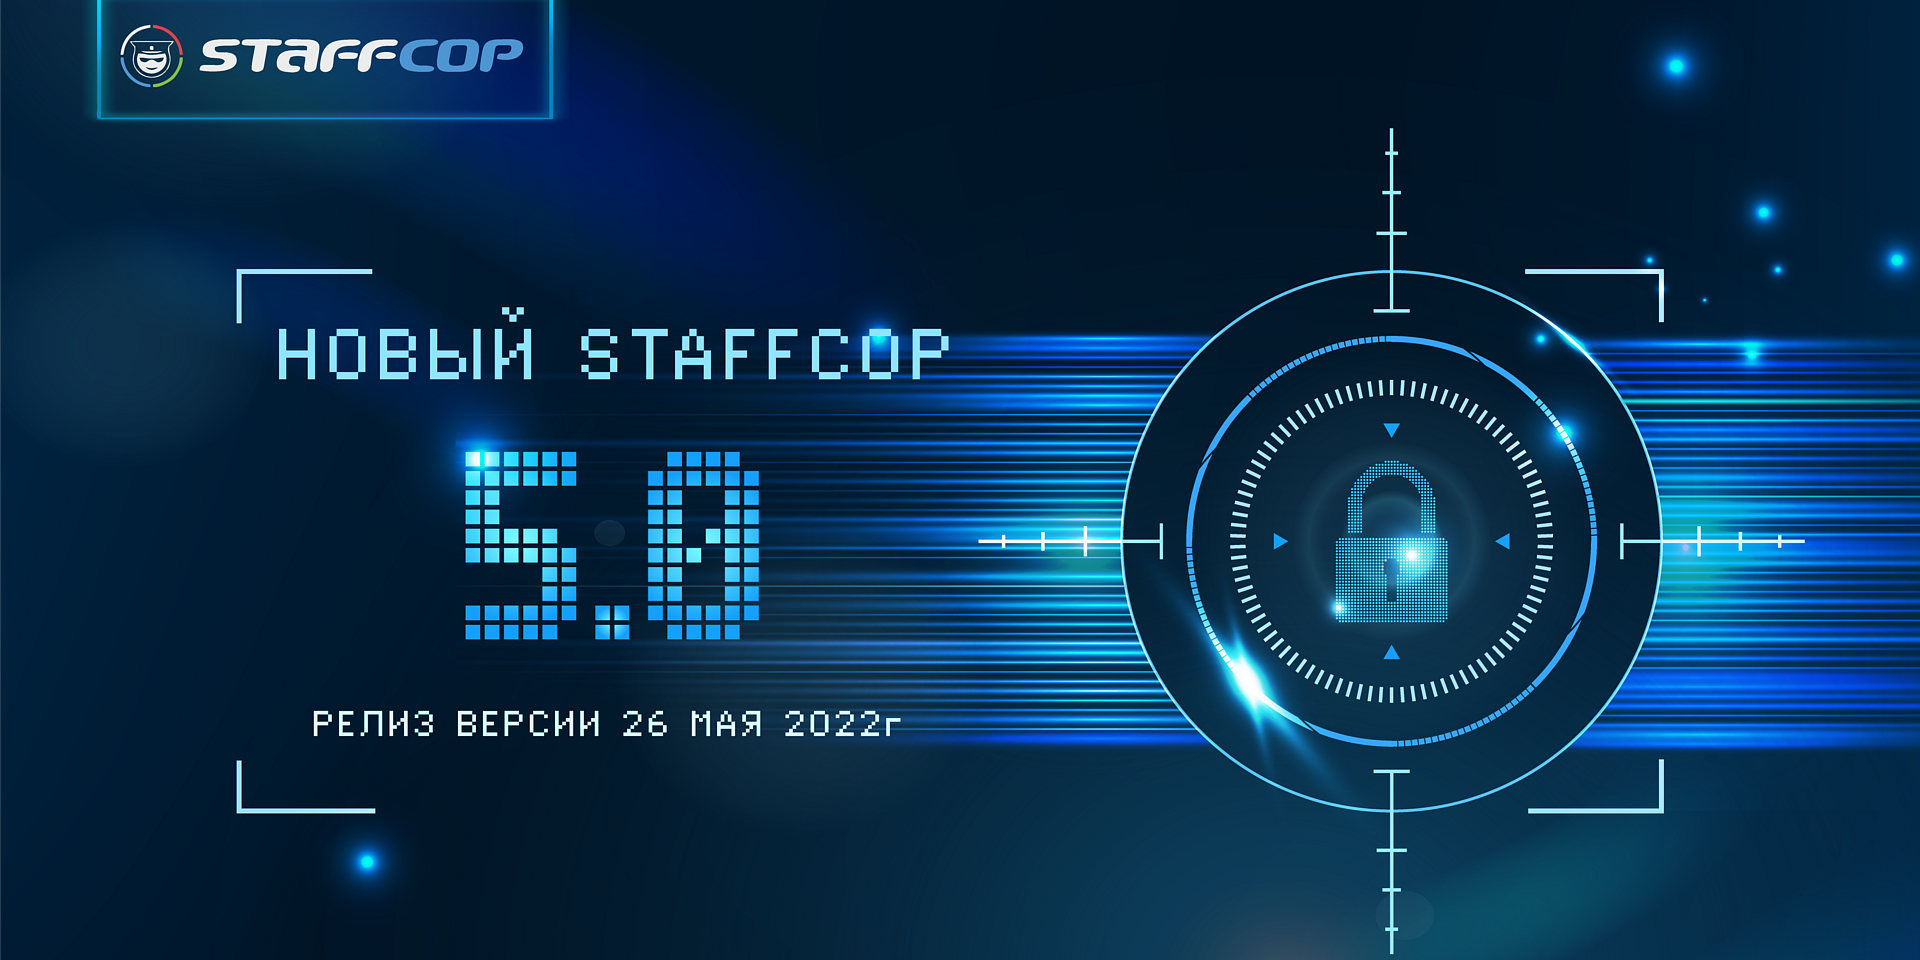 Релиз новой версии Staffcop 5.0